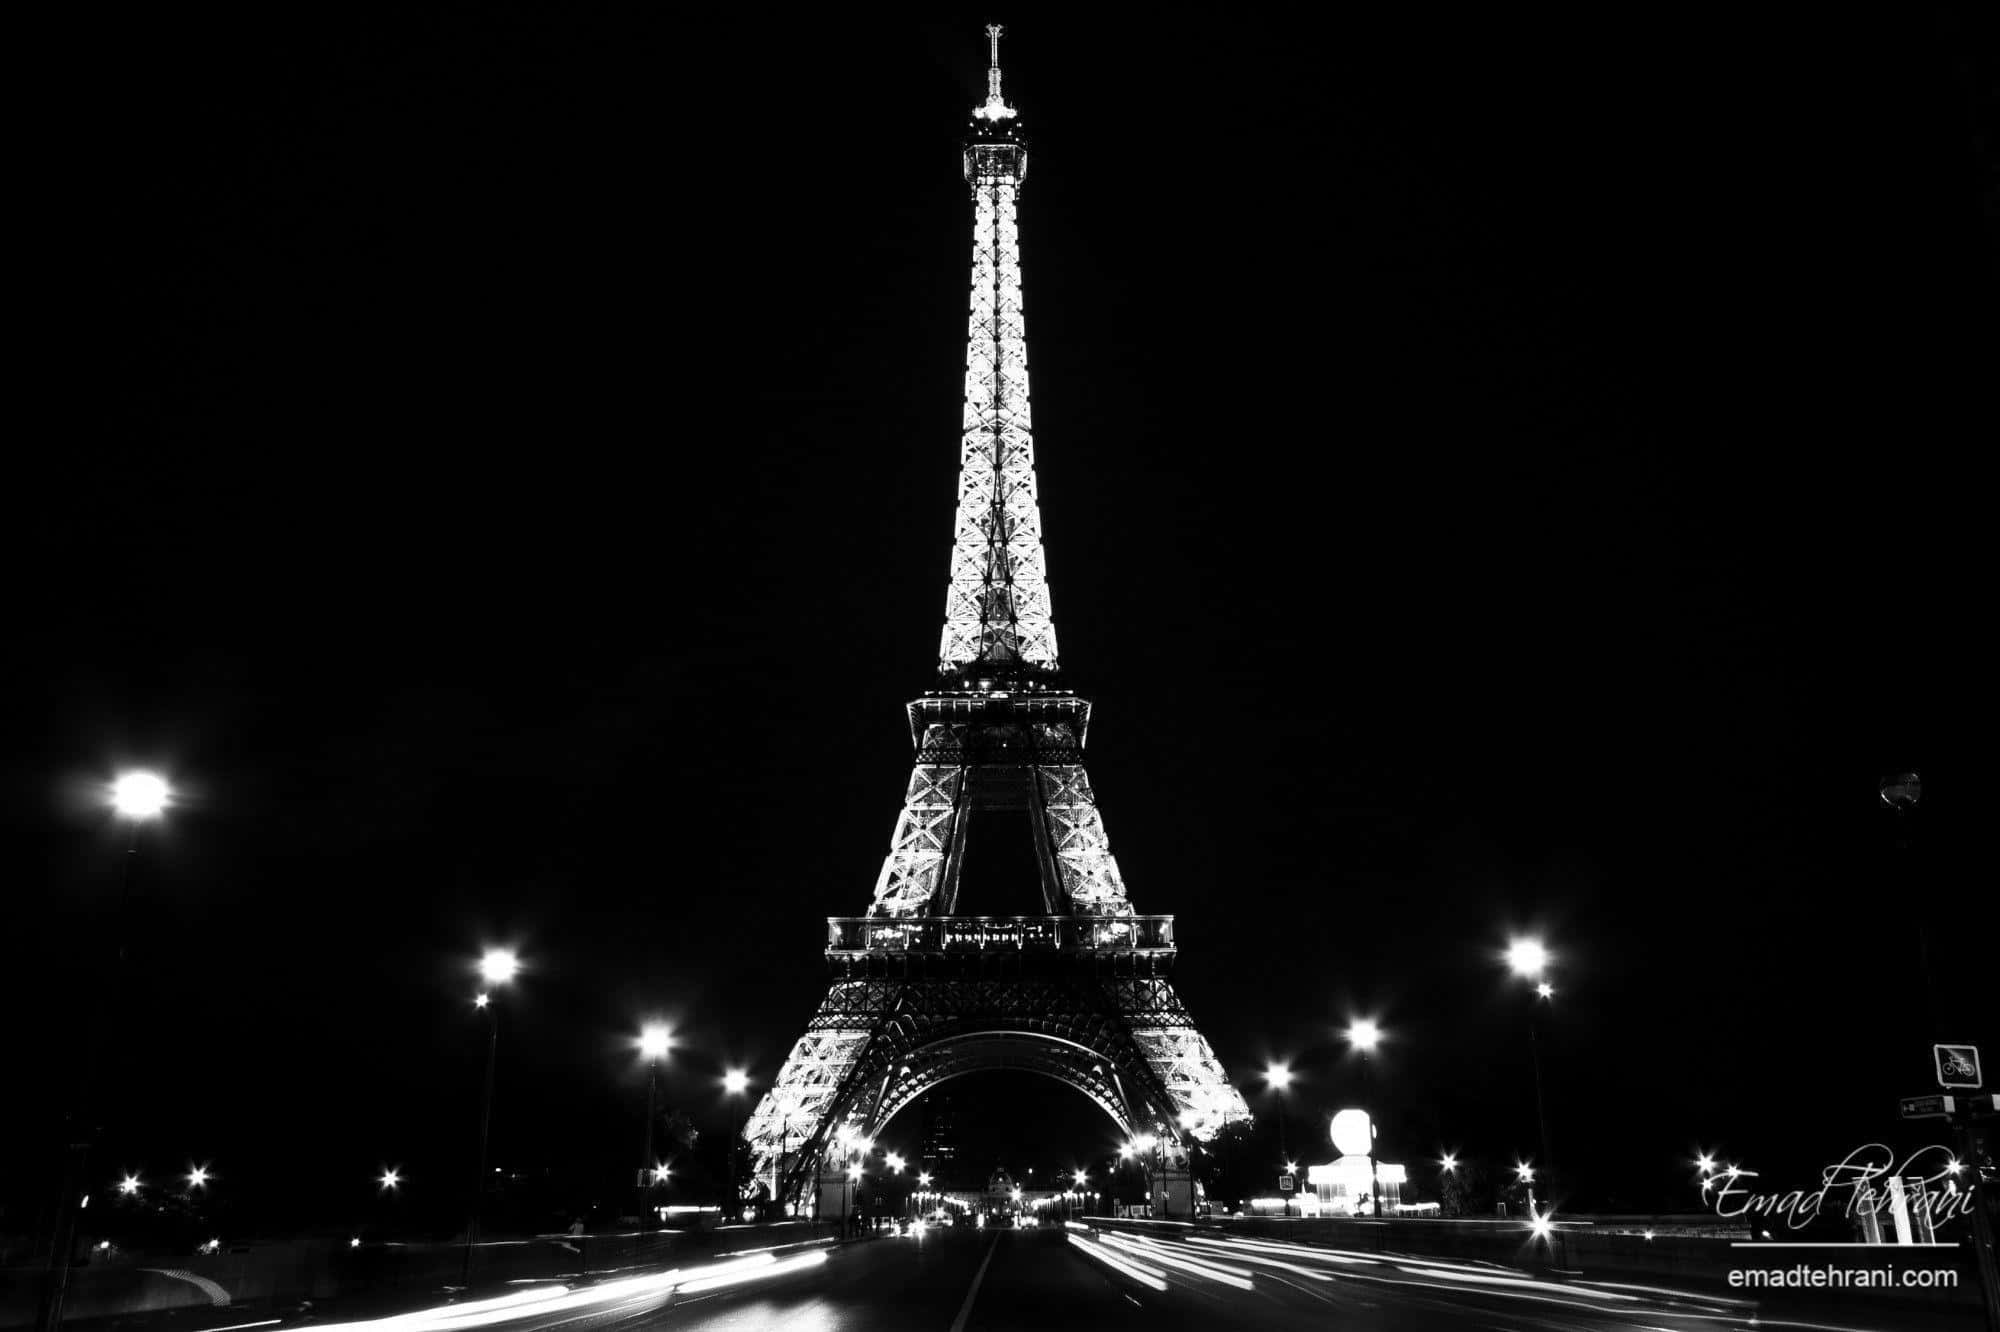 Imagende La Torre Eiffel En Blanco Y Negro De Noche.